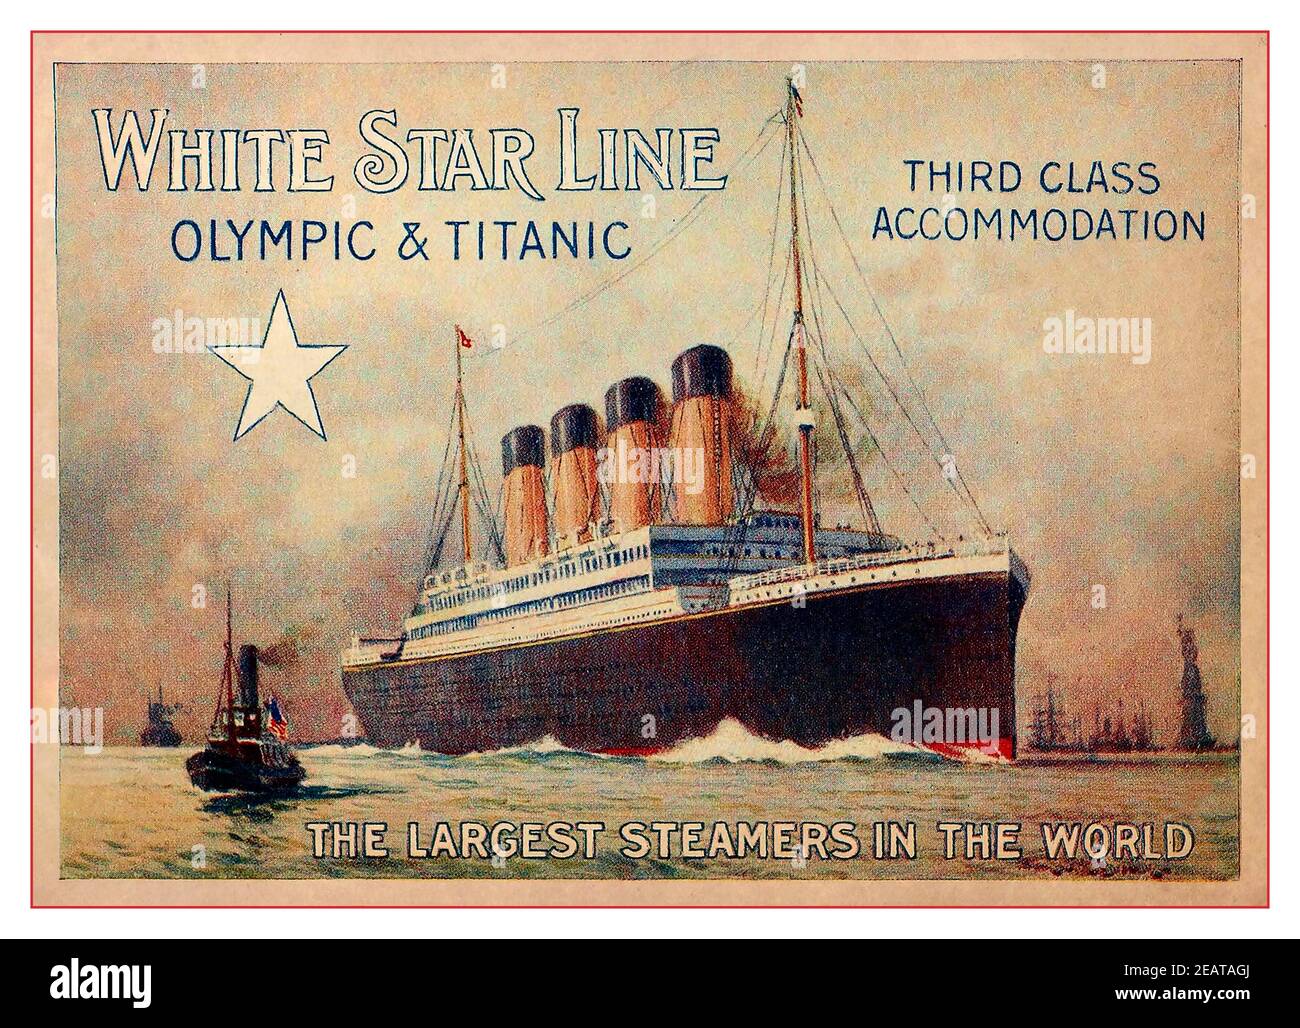 TITANIC & OLYMPIC 1900's Brochure Anuncio página en color por White Star Line ofrece alojamiento de tercera clase en el mayor Steamers En el mundo 1910 Foto de stock